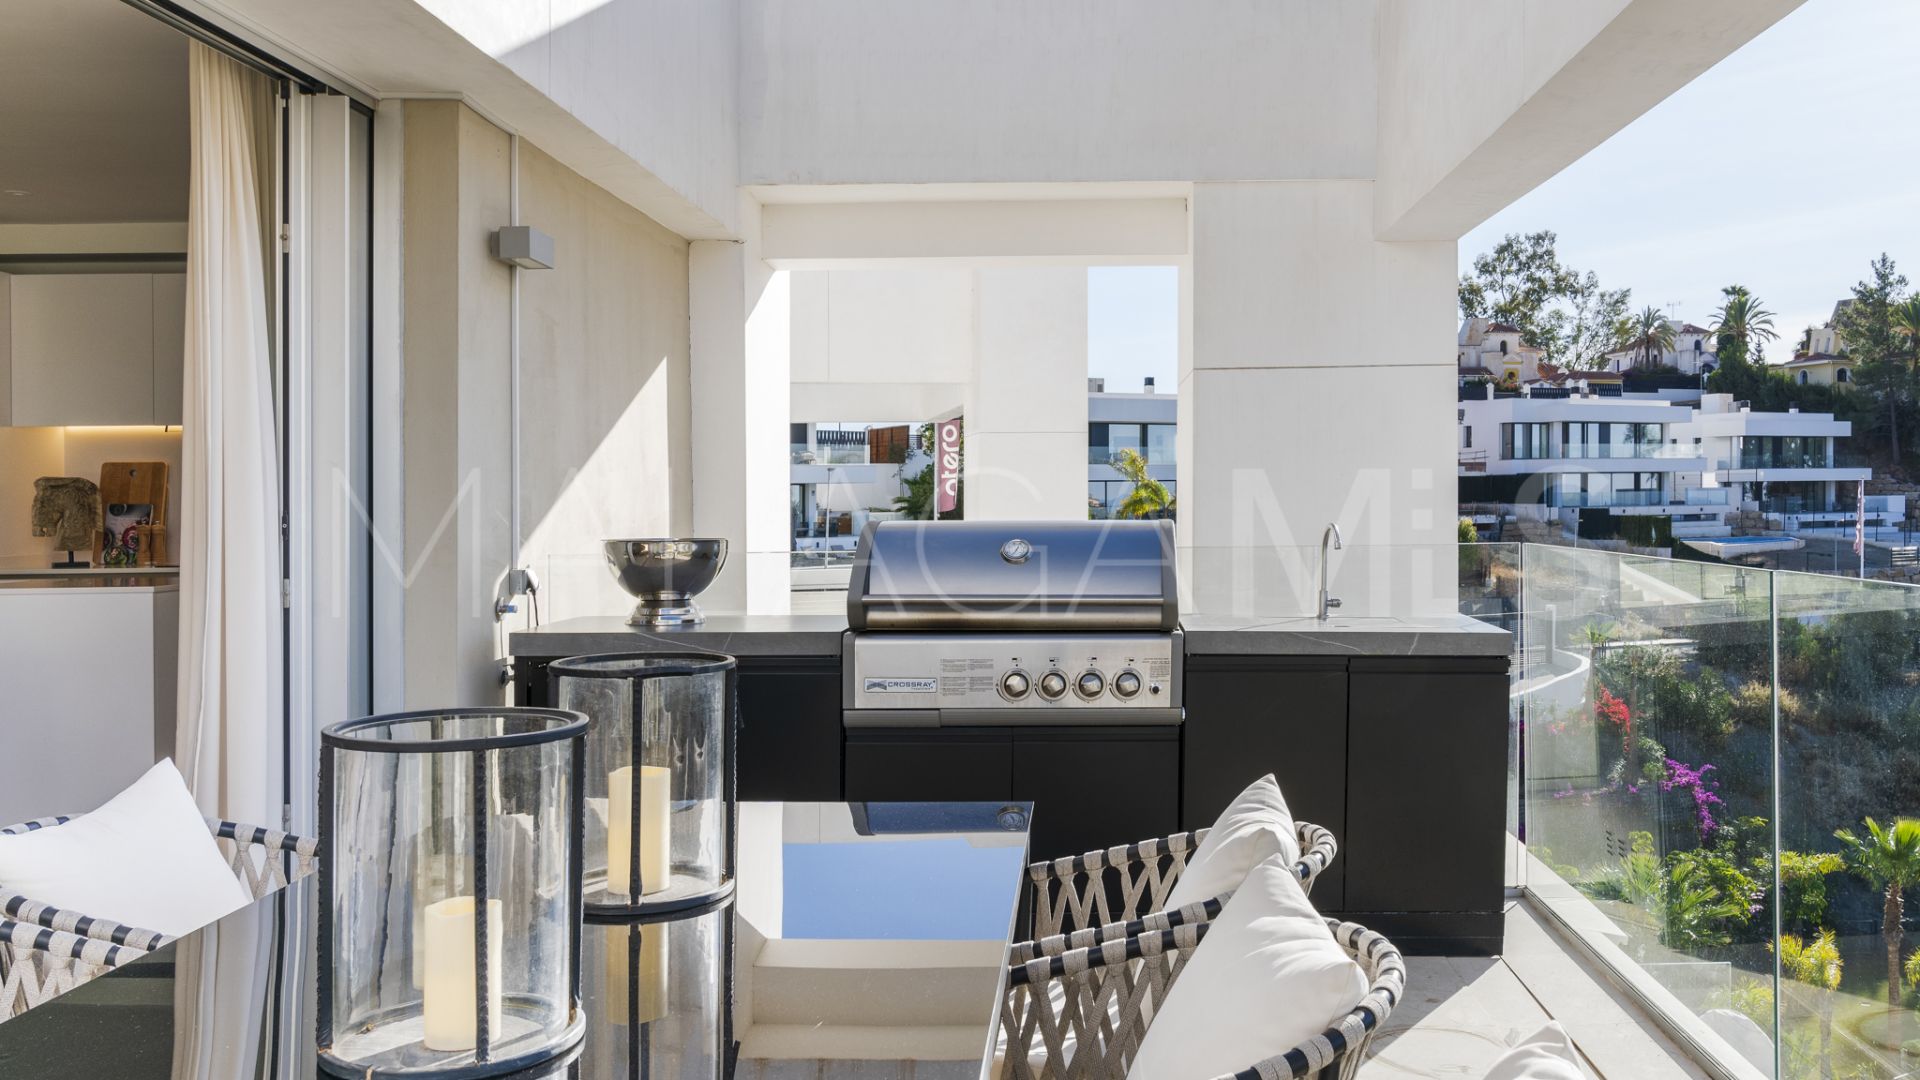 La Morelia de Marbella, atico duplex for sale de 3 bedrooms